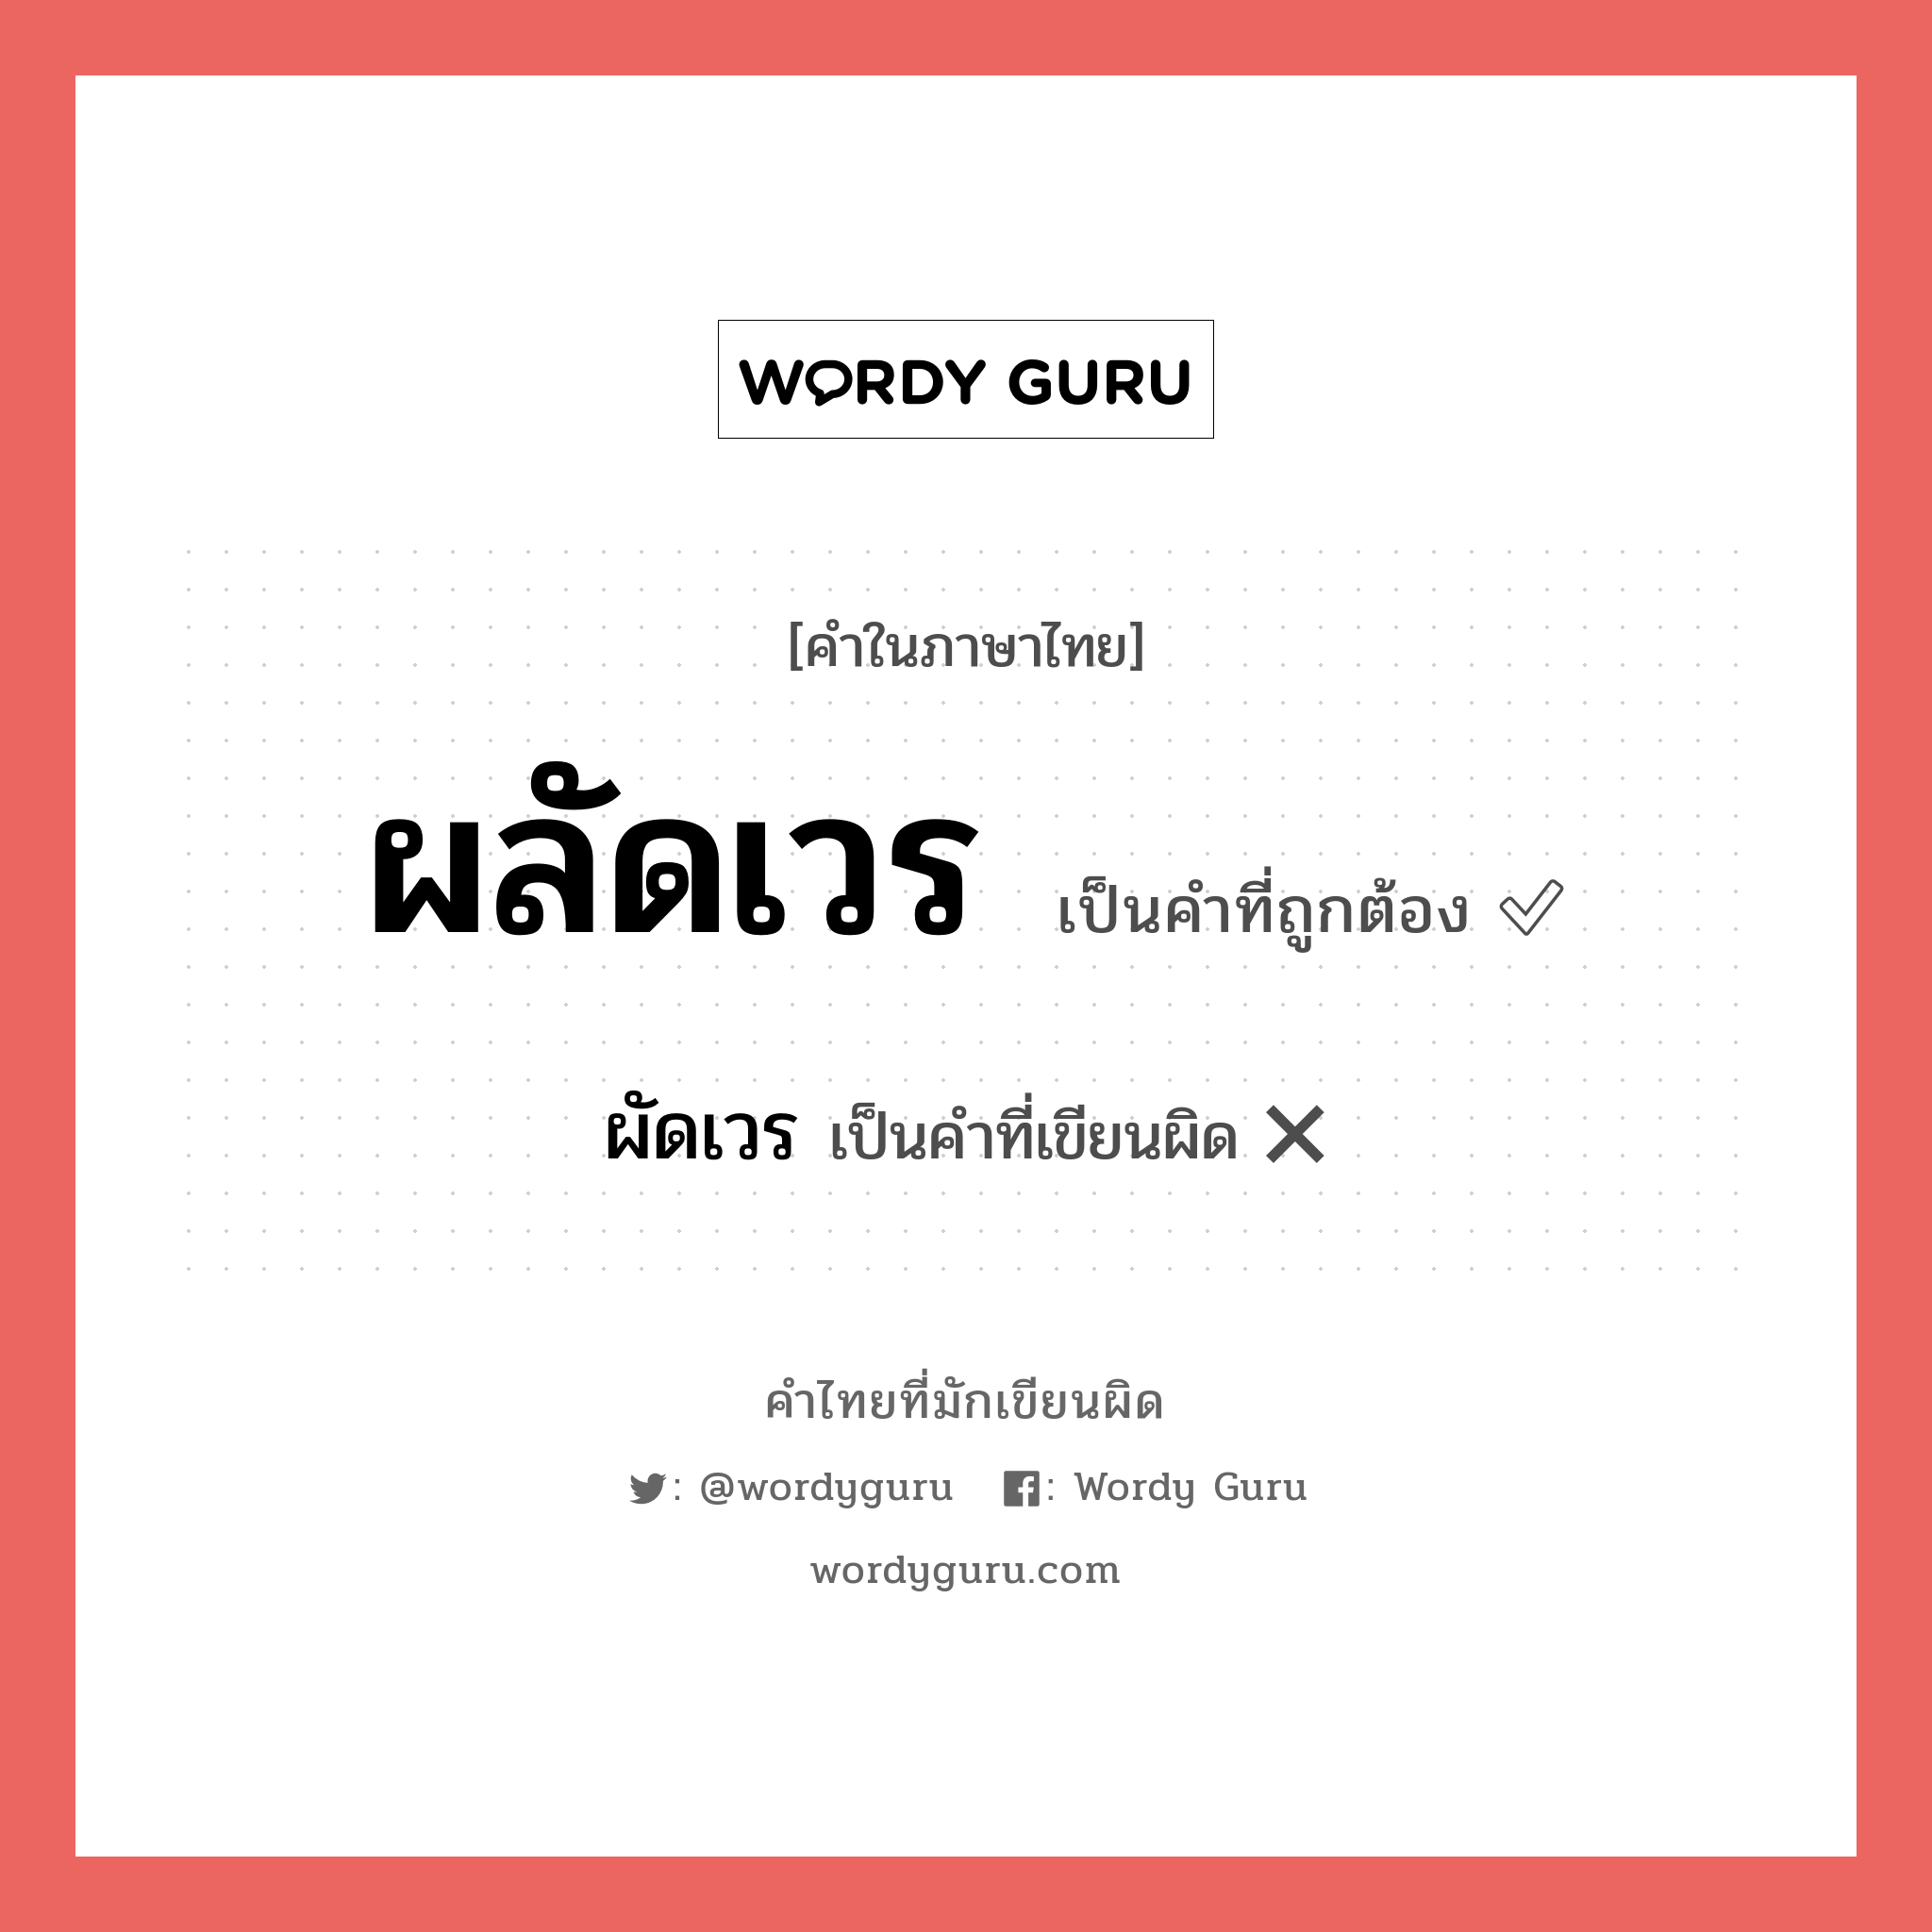 ผัดเวร หรือ ผลัดเวร คำไหนเขียนถูก?, คำในภาษาไทยที่มักเขียนผิด ผัดเวร คำที่ผิด ❌ ผลัดเวร